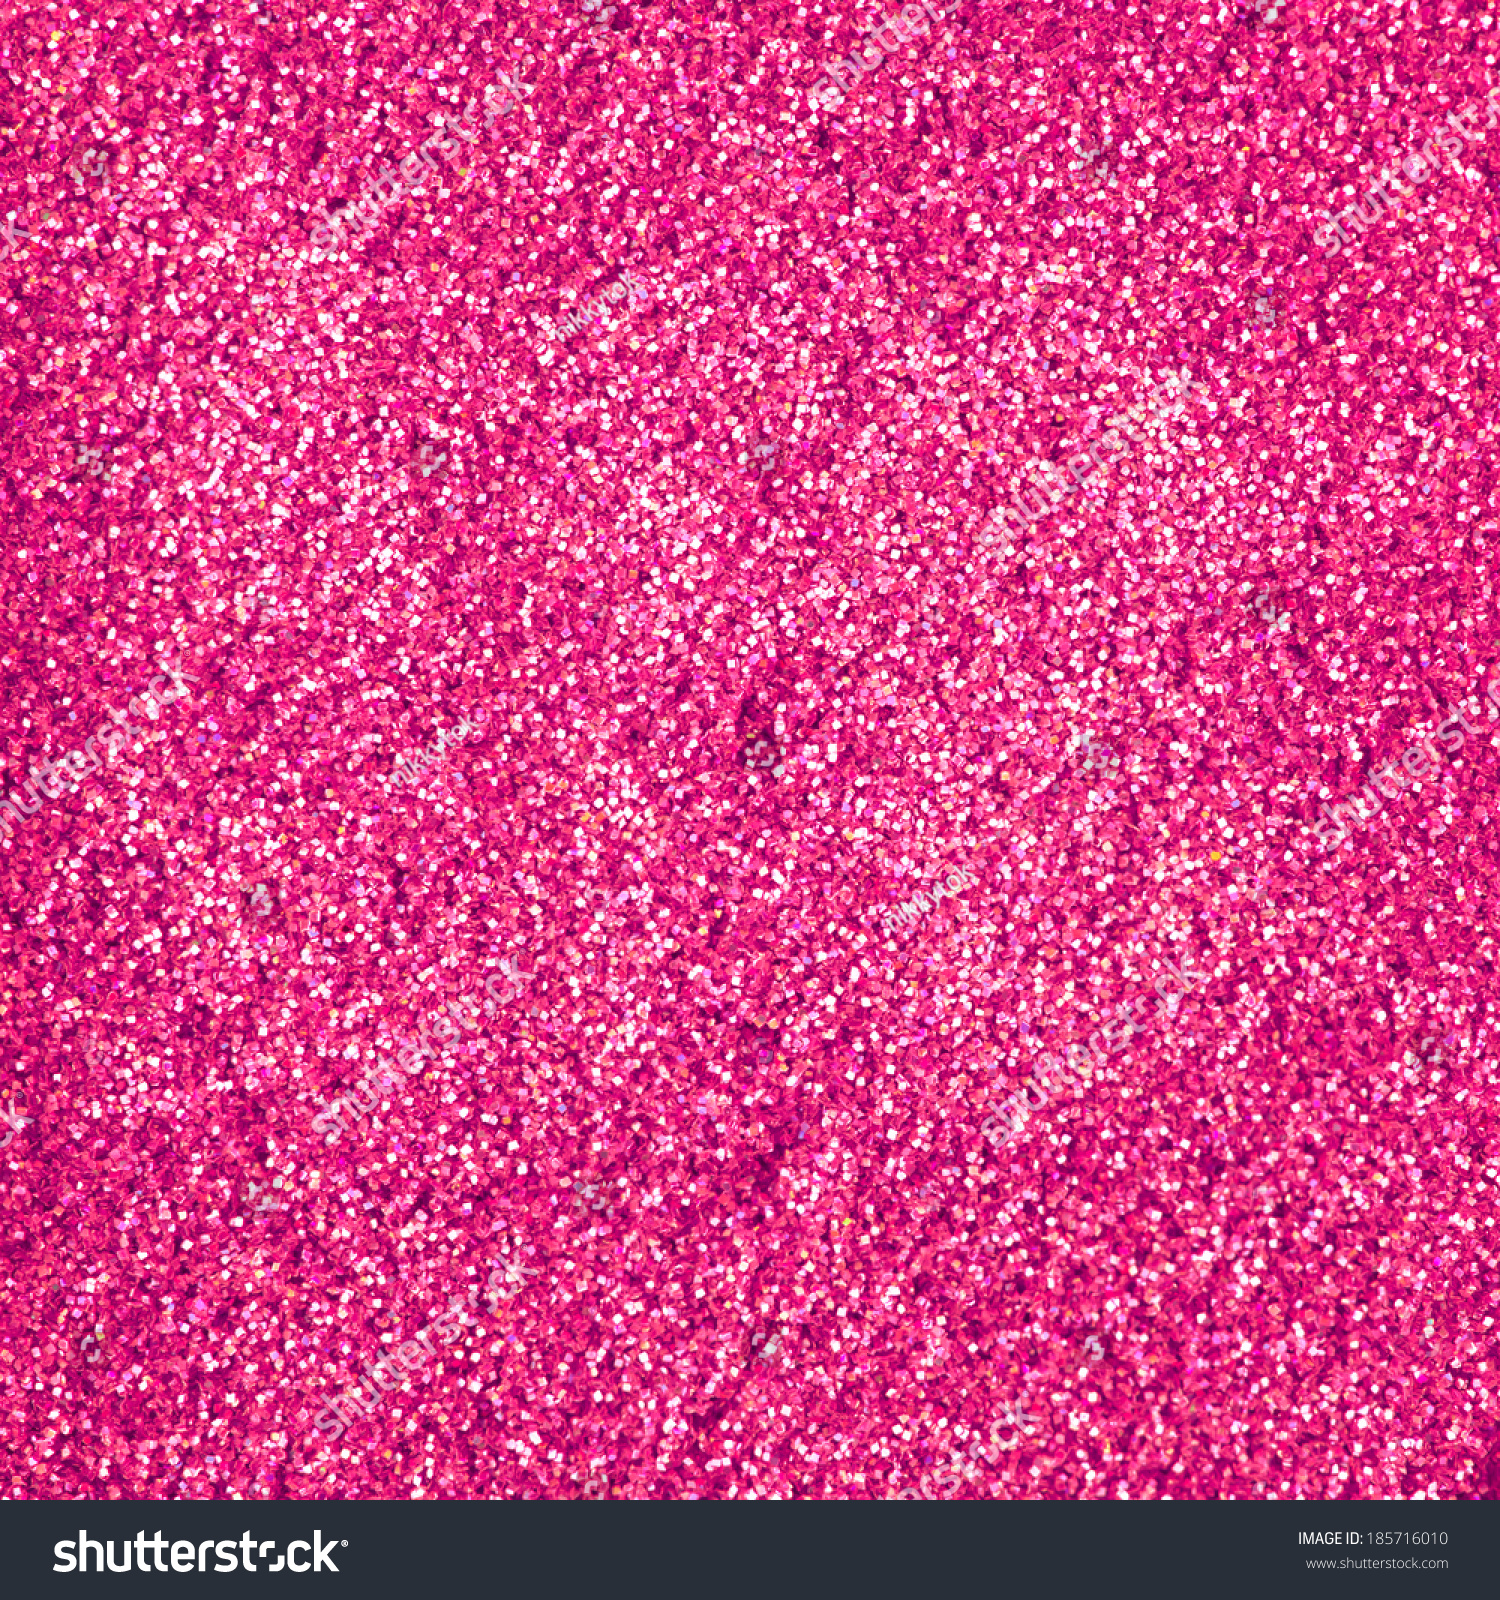 Pink Glitter Makeup Powder Texture Stock Photo 185716010 : Shutterstock